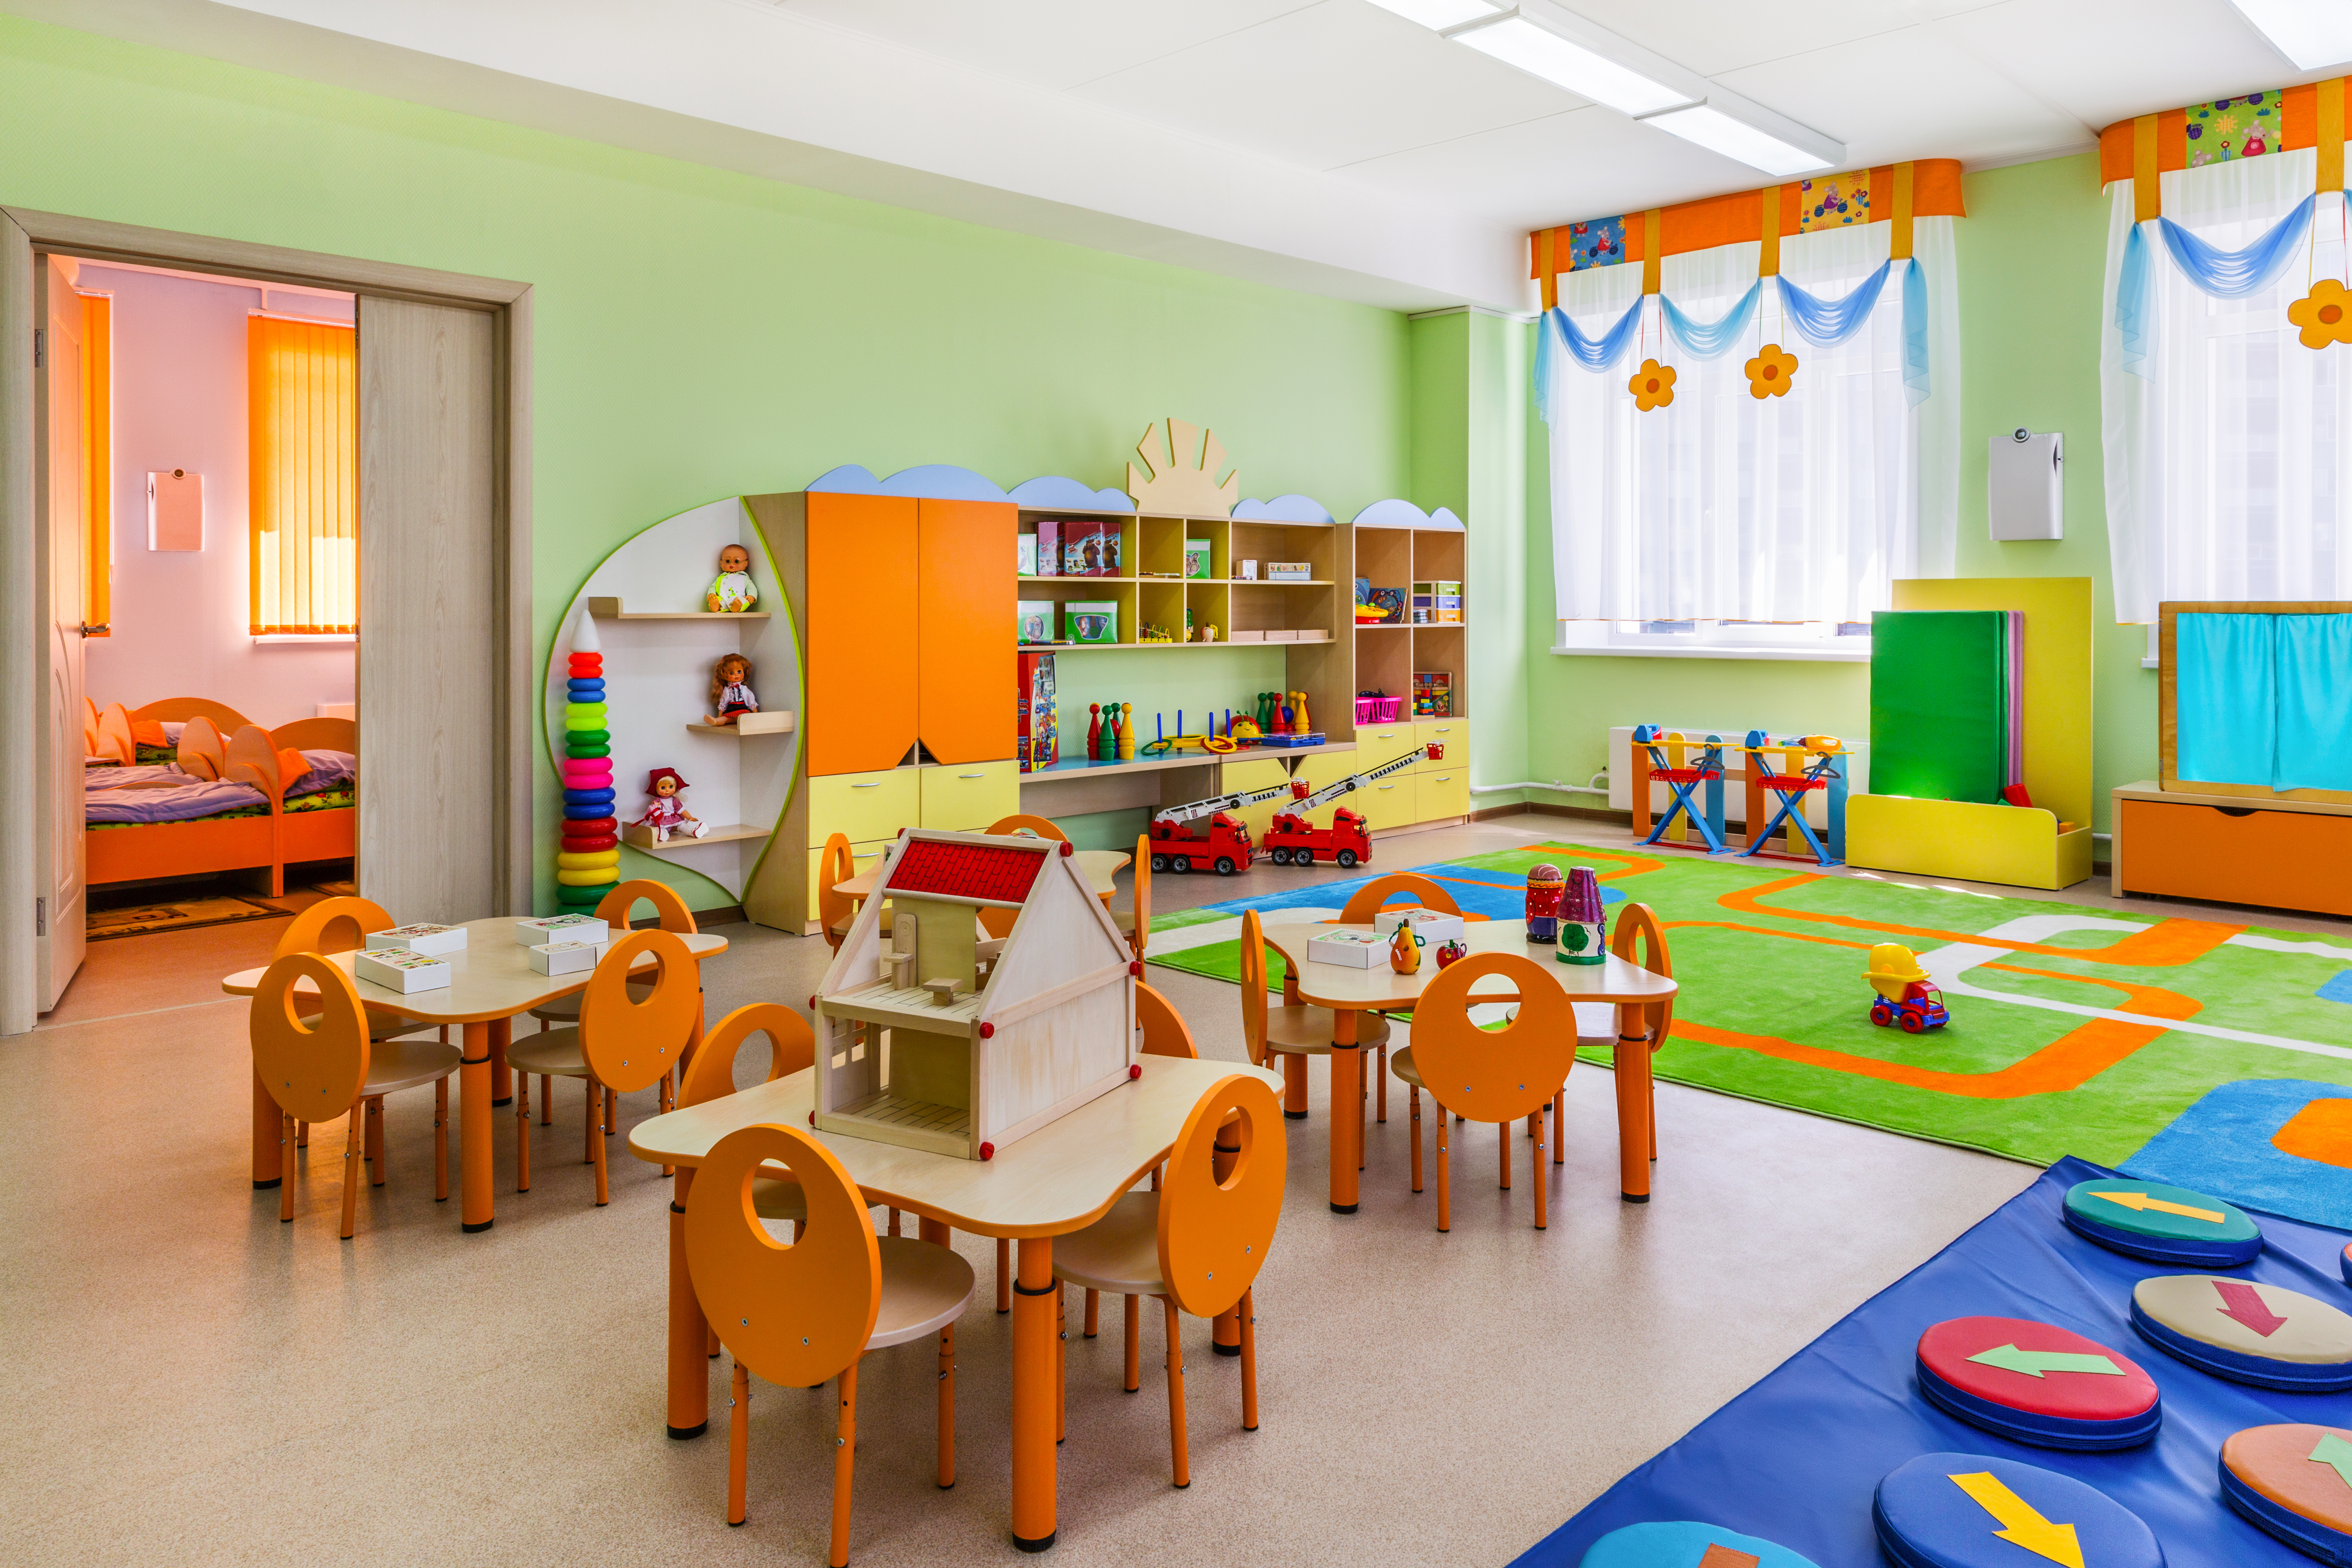  Откриват нови 2000 места в детските градини в София 